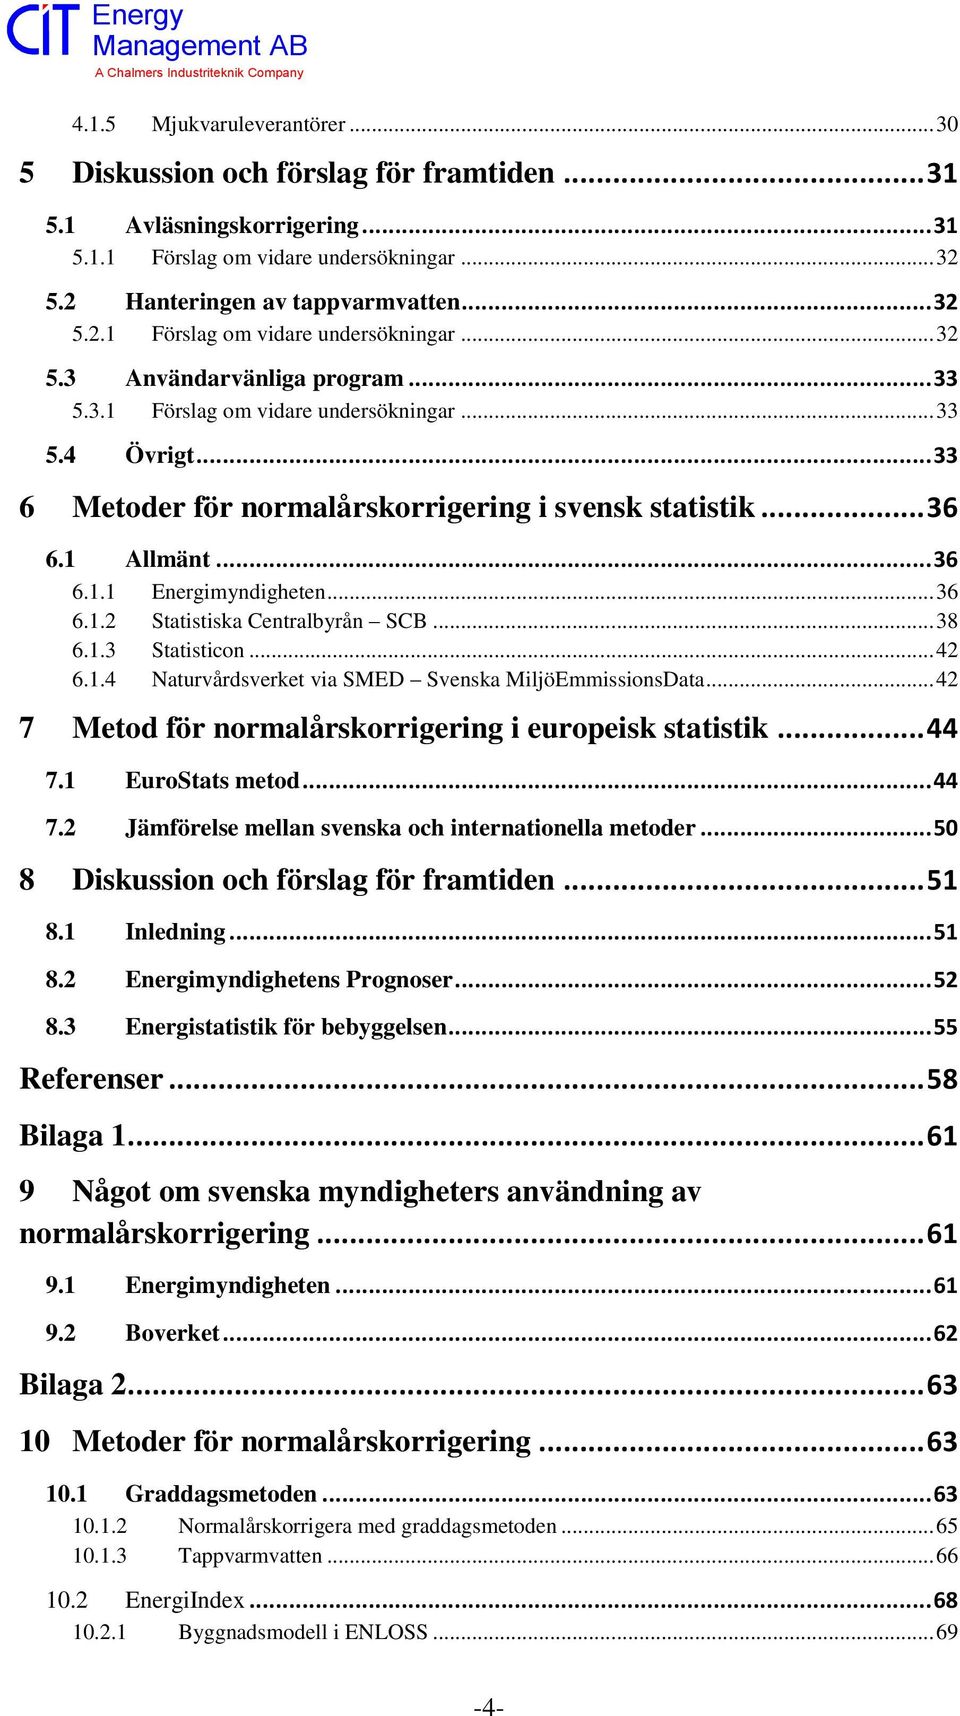 .. 38 6.1.3 Statisticon... 42 6.1.4 Naturvårdsverket via SMED Svenska MiljöEmmissionsData... 42 7 Metod för normalårskorrigering i europeisk statistik... 44 7.